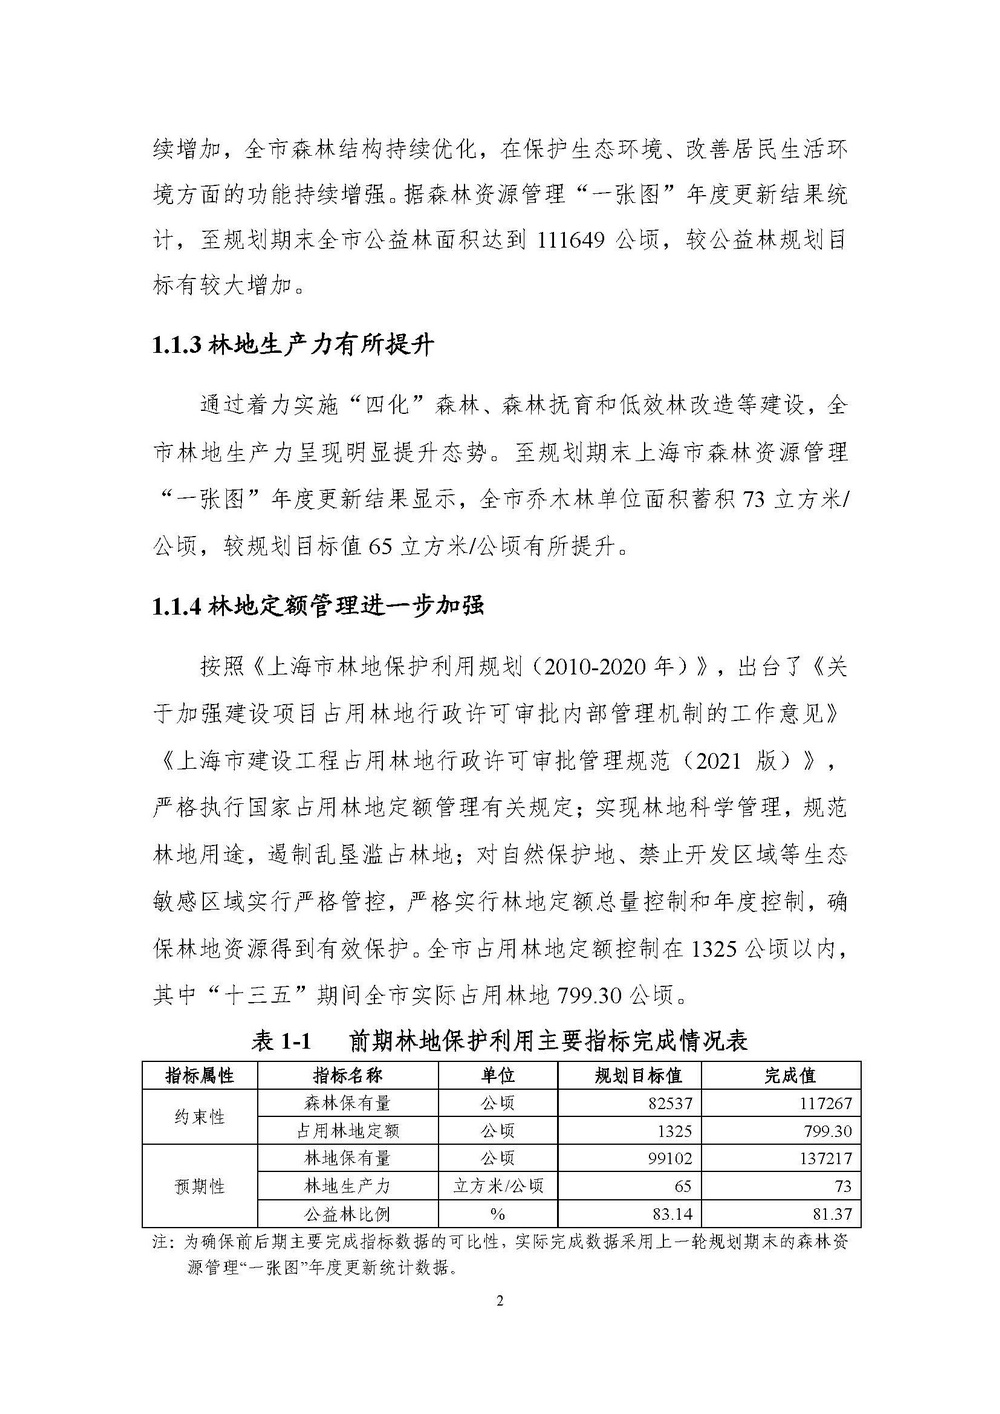 上海市森林和林地保护利用规划文本 公开稿 附图_页面_05.jpg